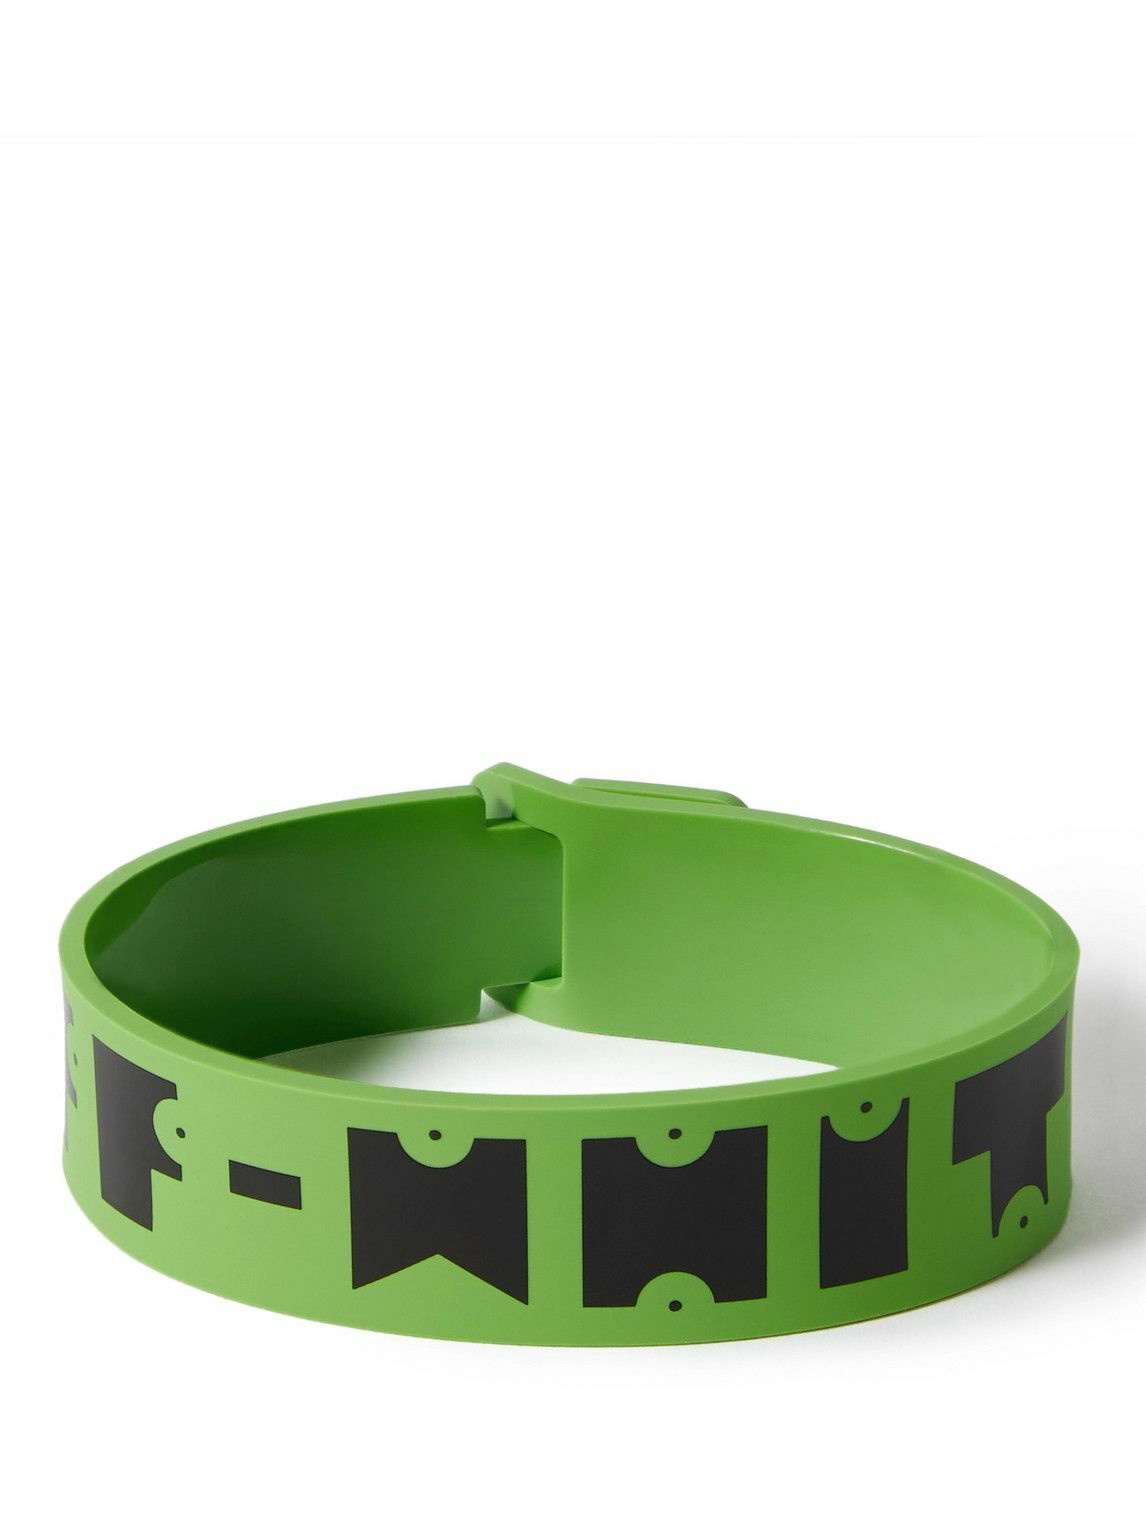 Motivation Personalize Name Logo Silicone Bracelets Custom Wristbands Gifts  | eBay